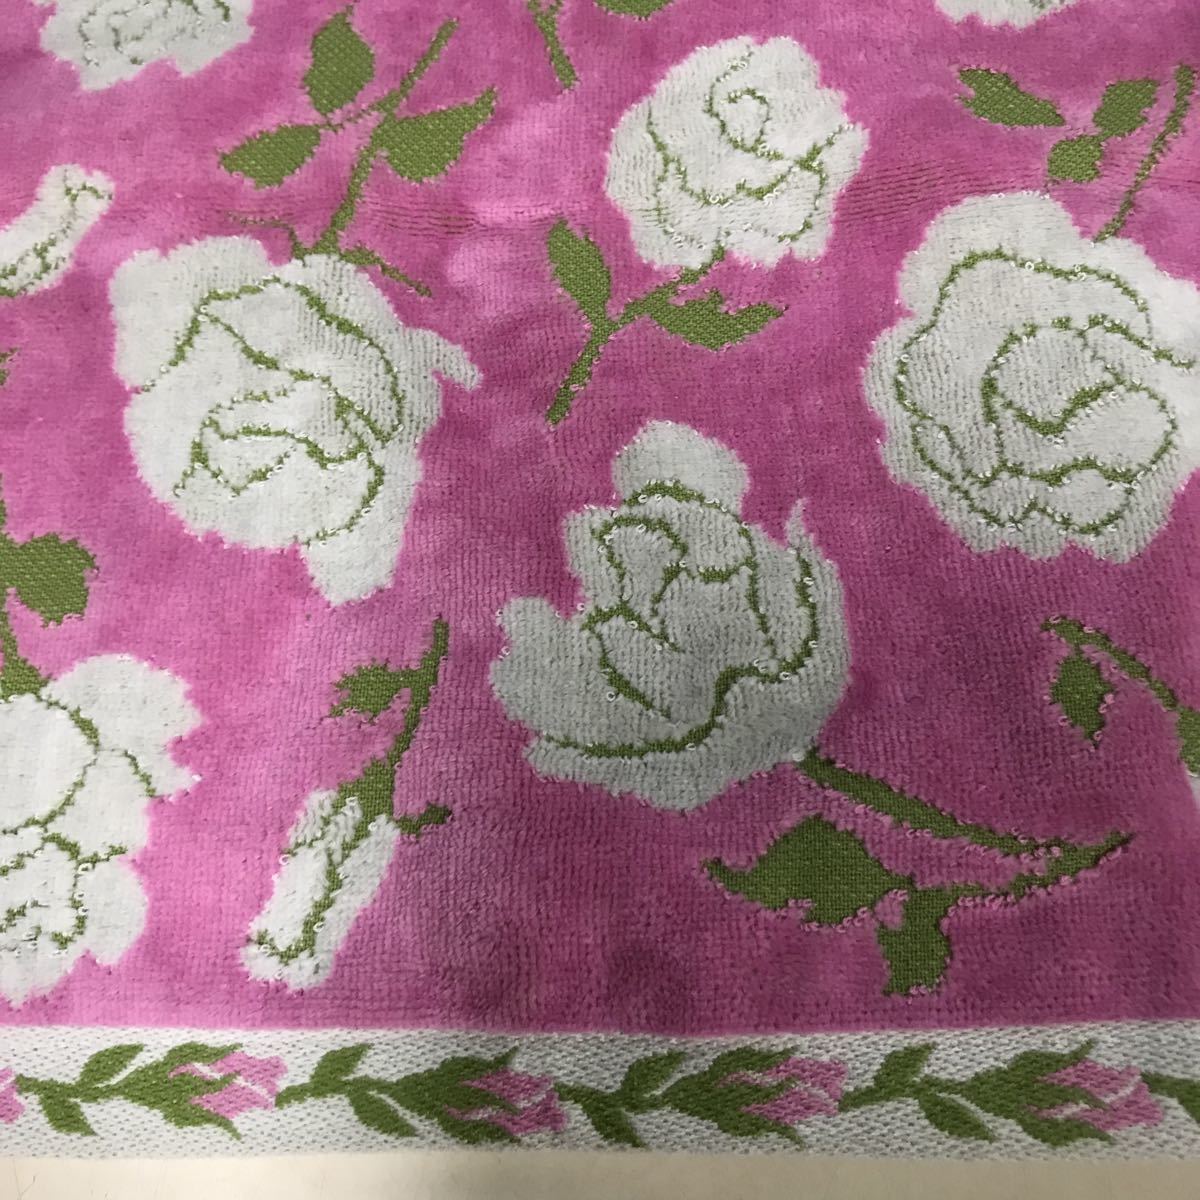  новый товар сейчас . полотенце роза рисунок полотенце для лица сделано в Японии ( бледный розовый )